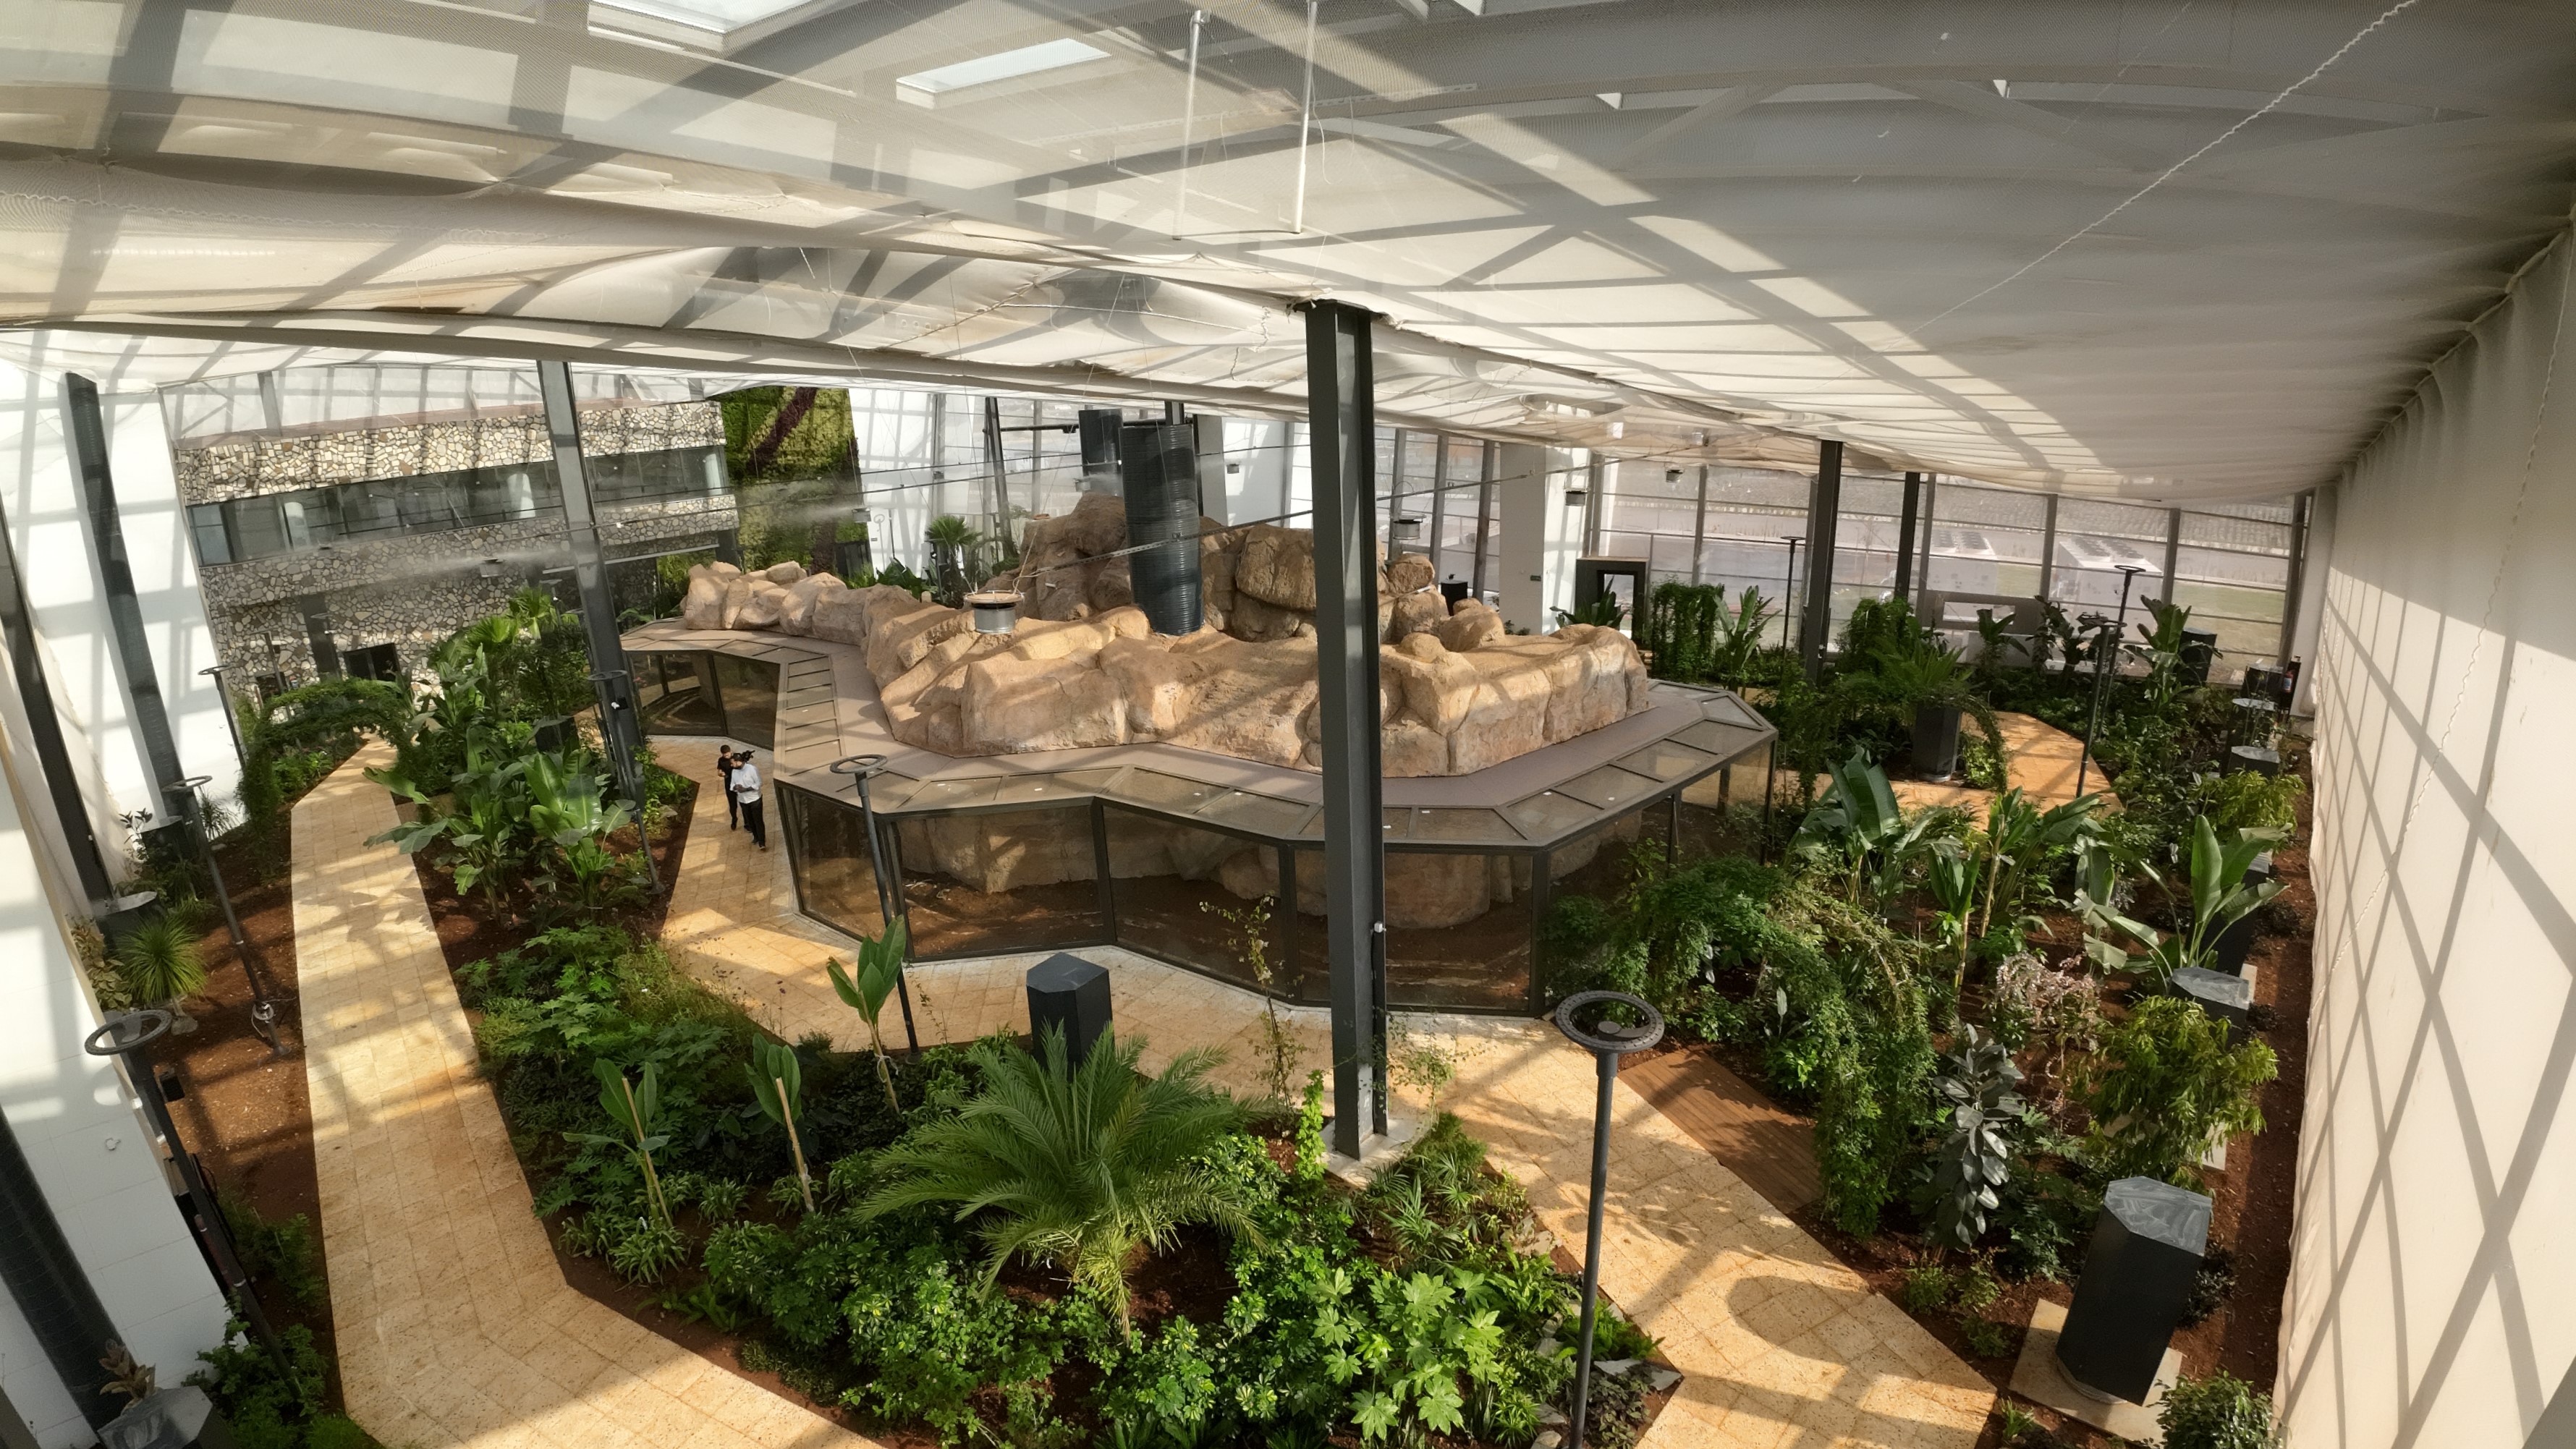 Kahramanmaraş’ın yeni cazibe merkezi; EXPO 2023 Kelebek ve Uğur Böceği Bahçesi